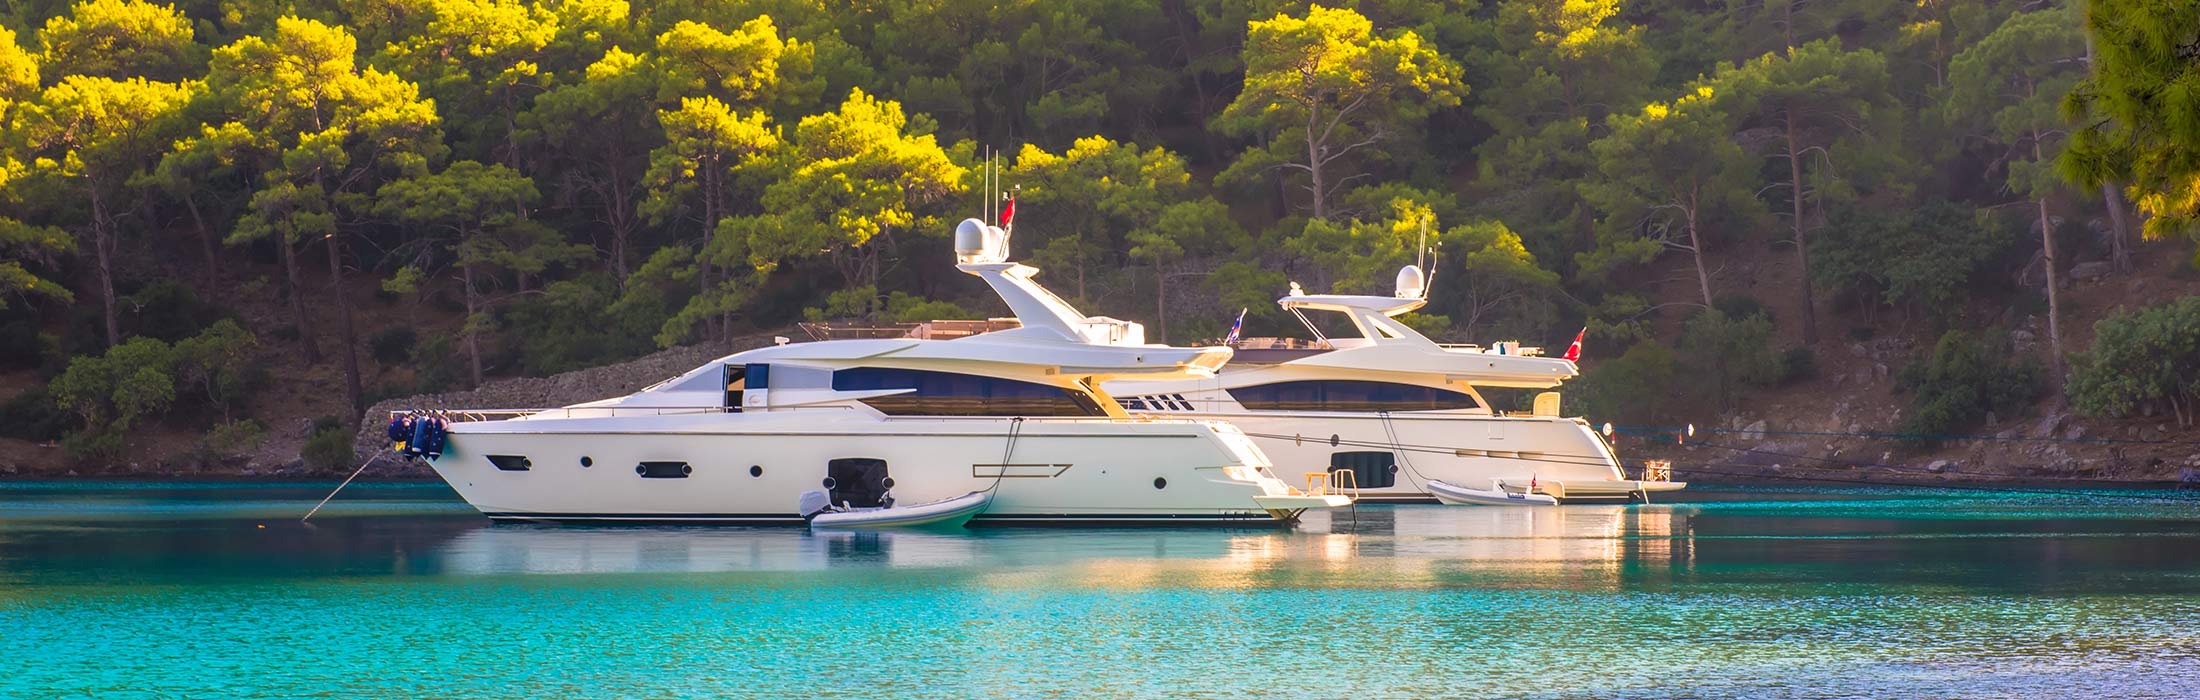 top-yacht-charter-destinations-mediterranean-turkey-gocek-main-slider-3.jpg